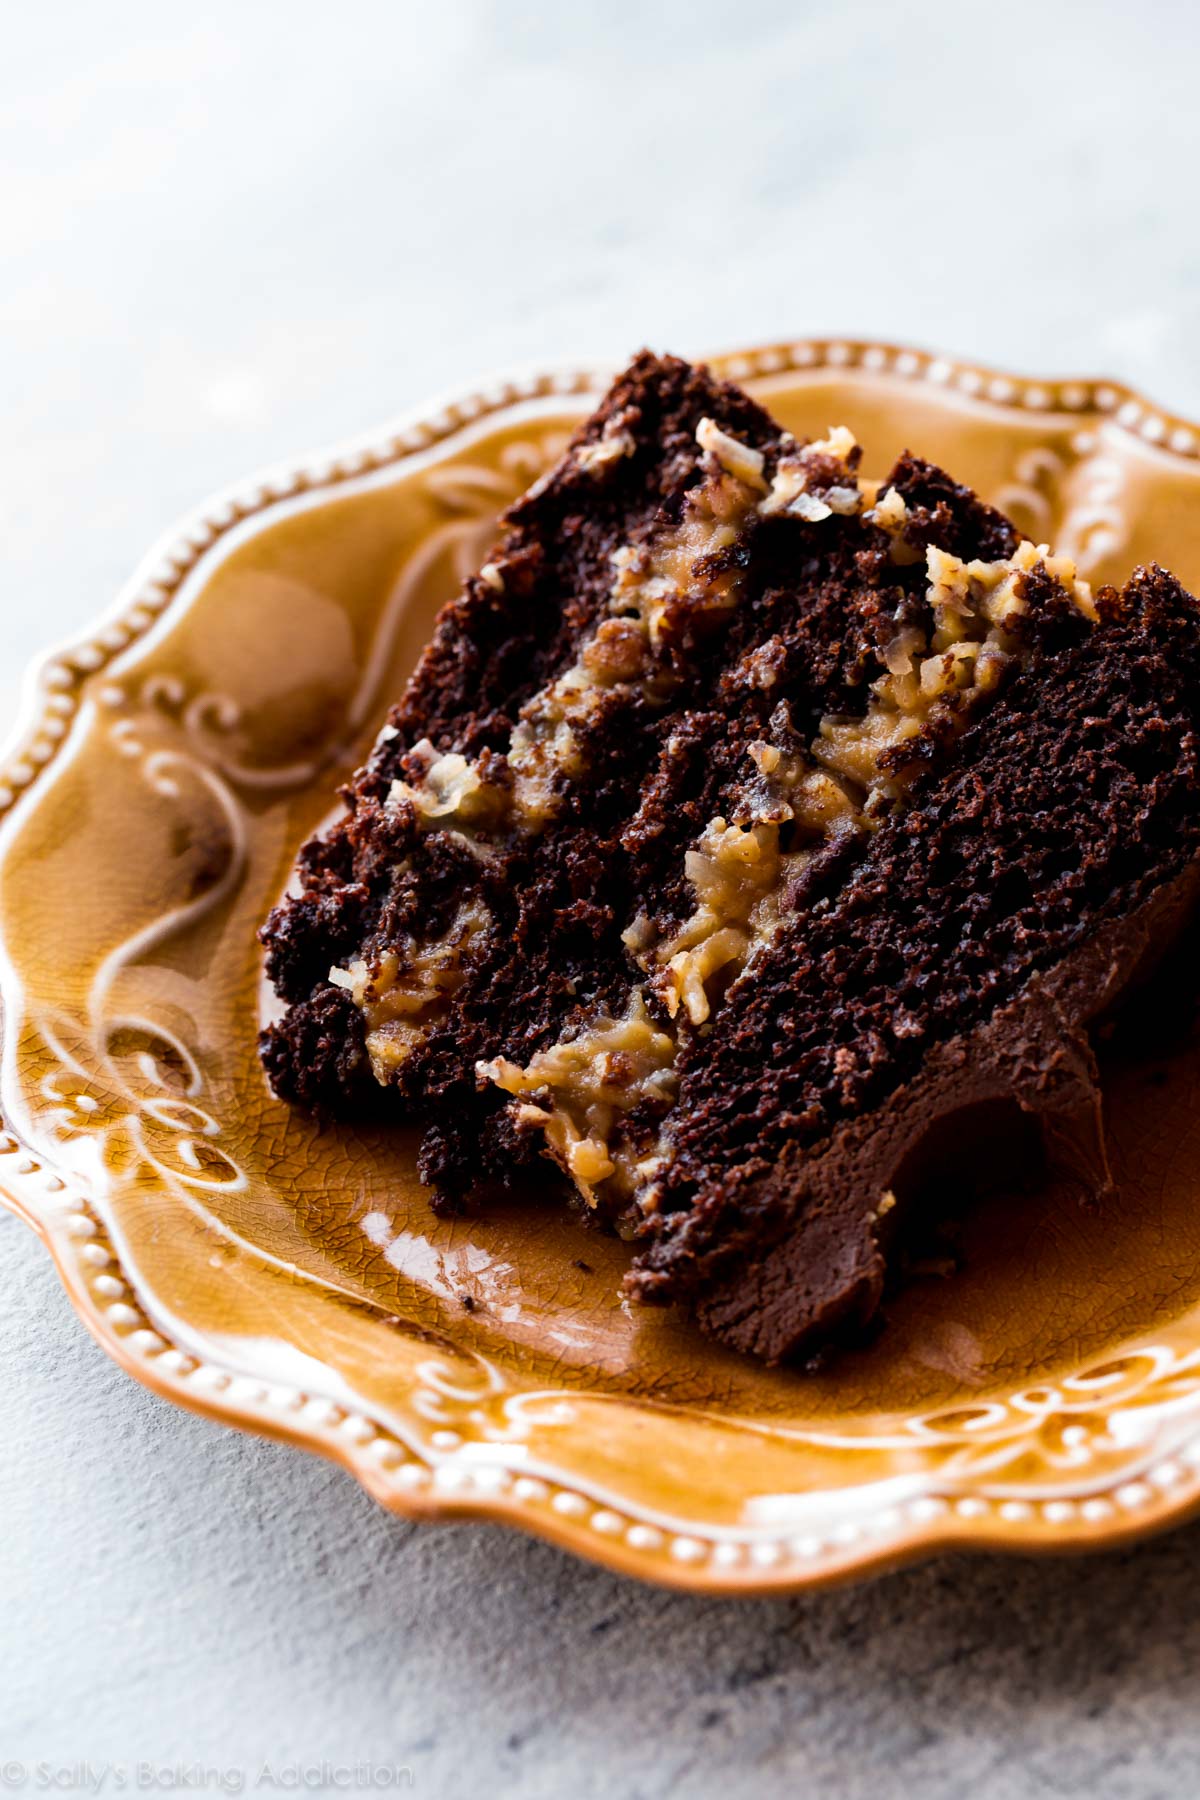 Gâteau au chocolat allemand moelleux et décadent avec un gâteau au chocolat fait maison, une garniture aux pacanes grillées et à la noix de coco et un glaçage au chocolat sur le dessus! Recette sur sallysbakingaddiction.com